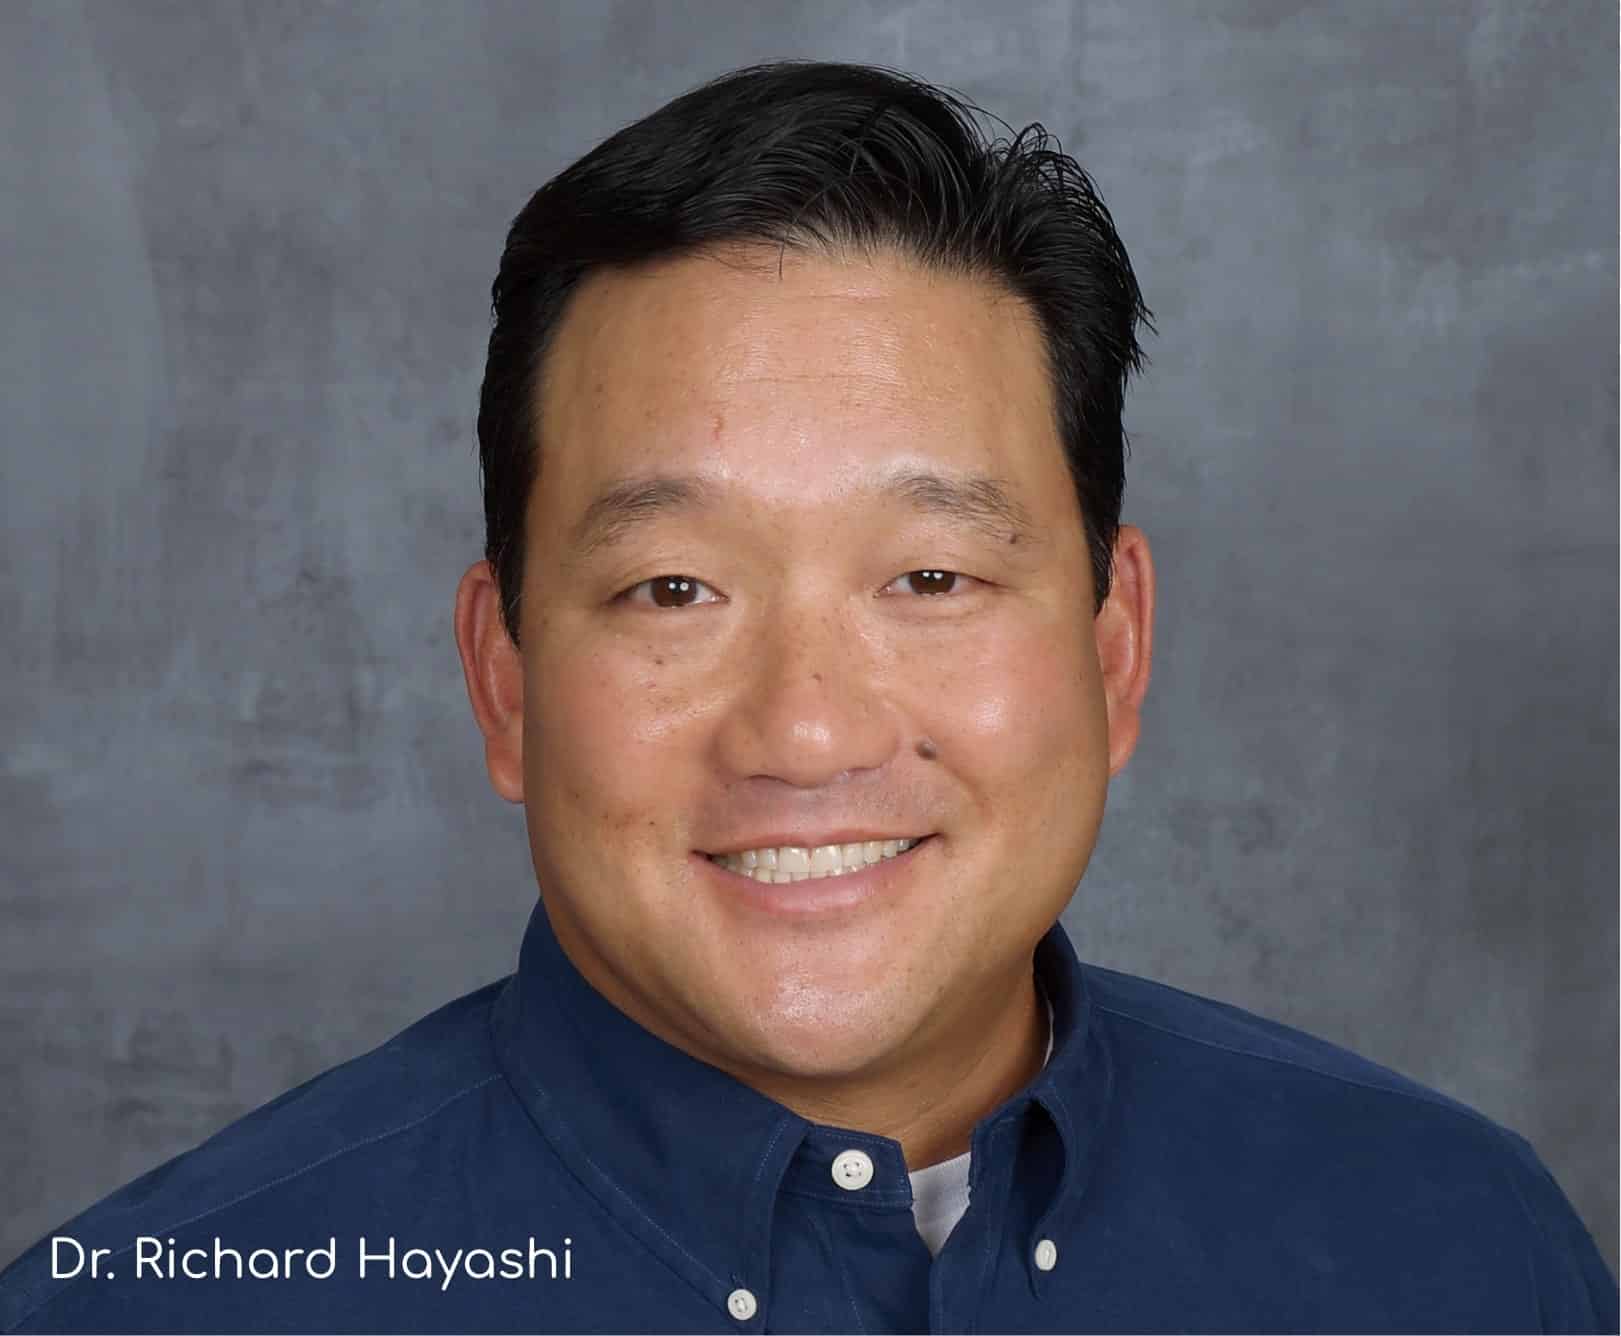 Dr. Richard Hayashi